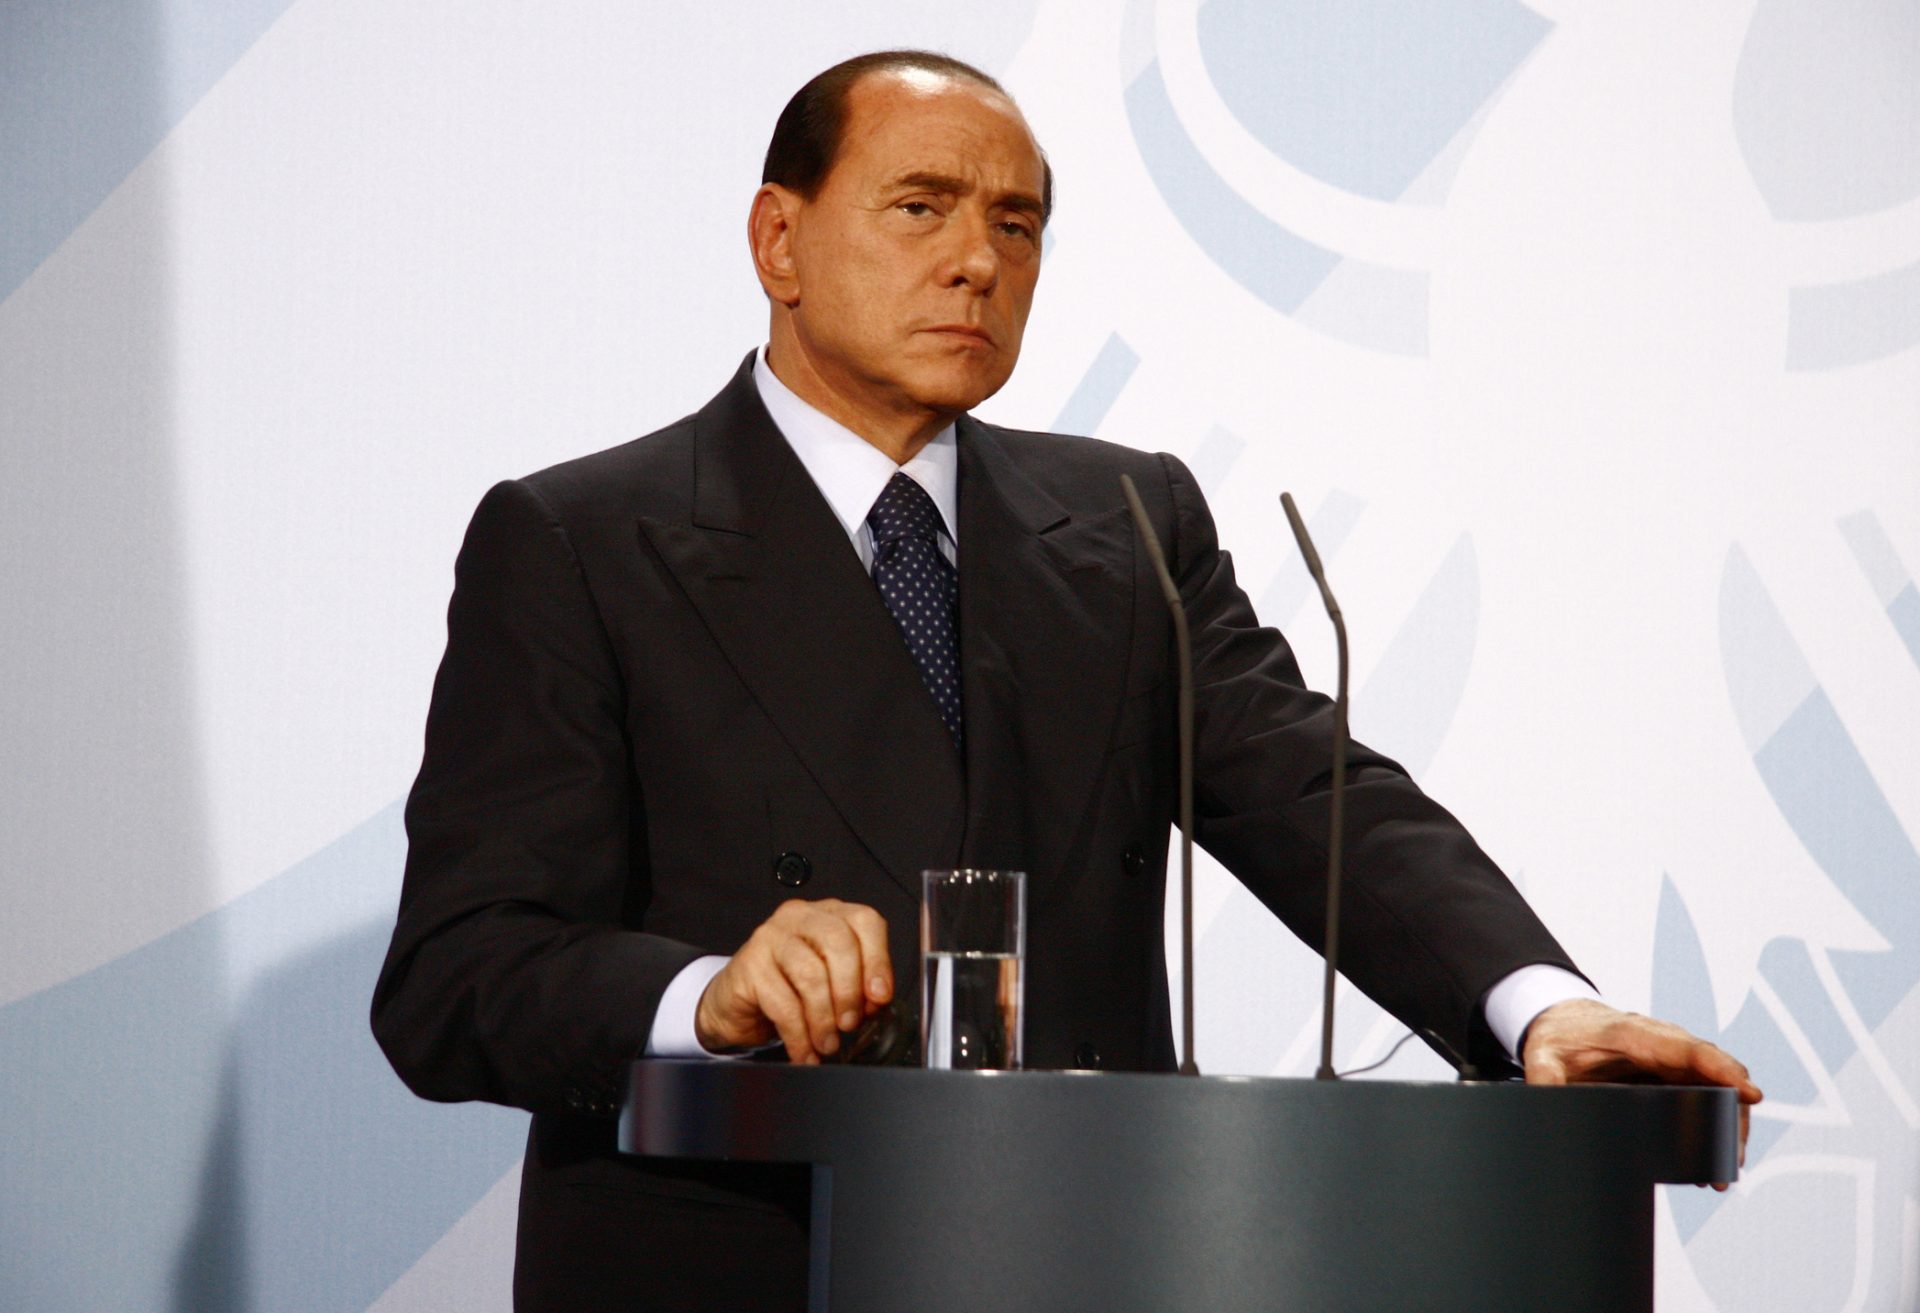 Procuradoria de Milão acusa Silvio Berlusconi de ter “escravas sexuais” nas suas festas